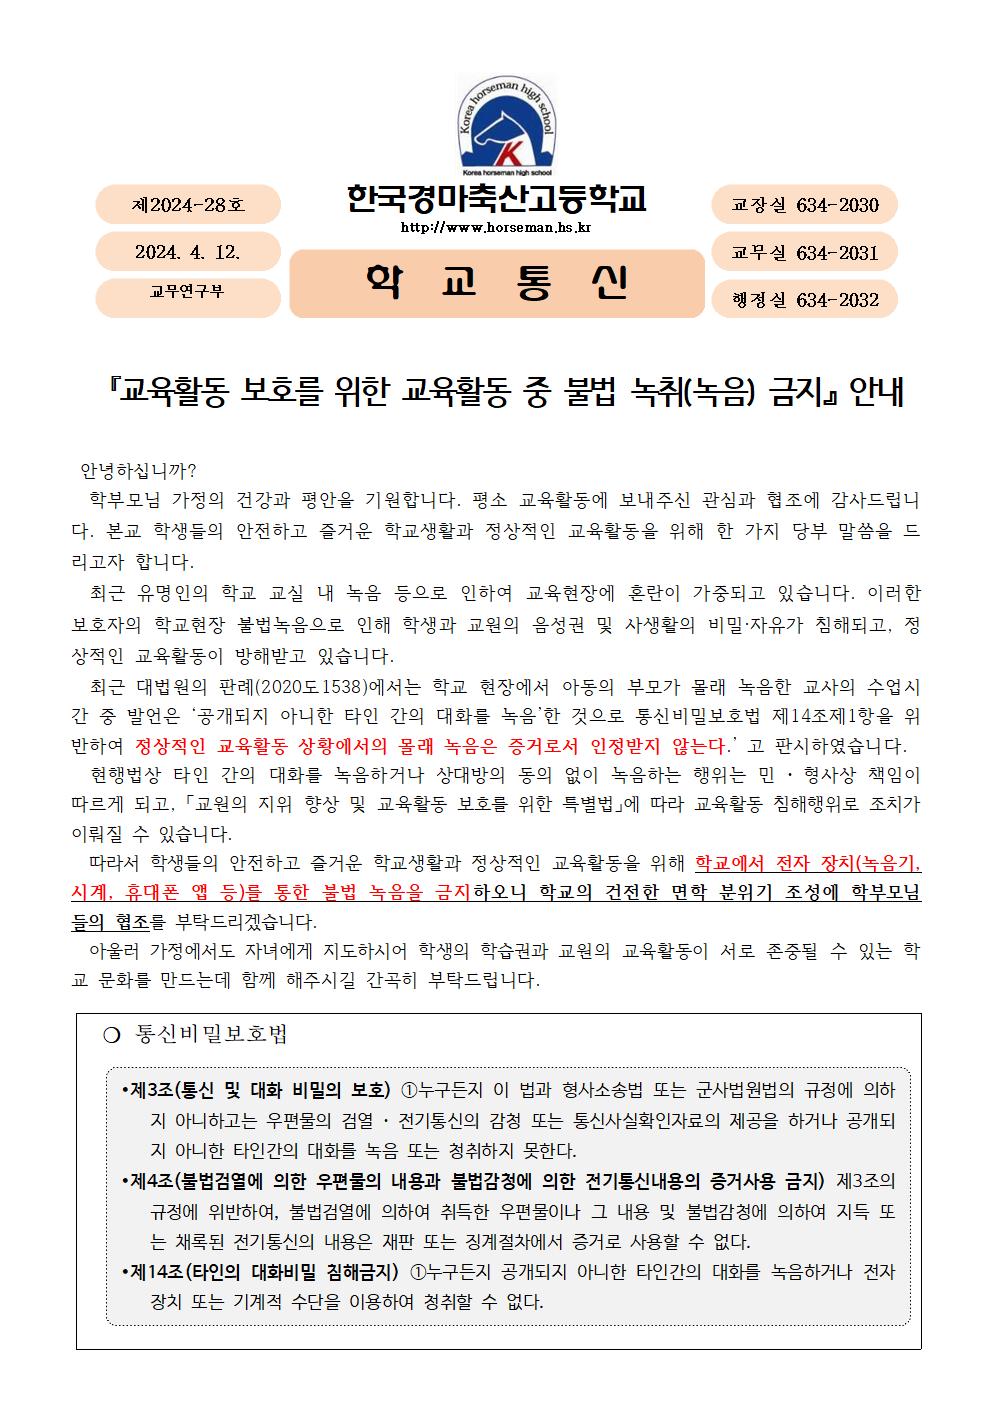 교육활동 중 불법 녹취(녹음) 금지 안내 가정통신문1001